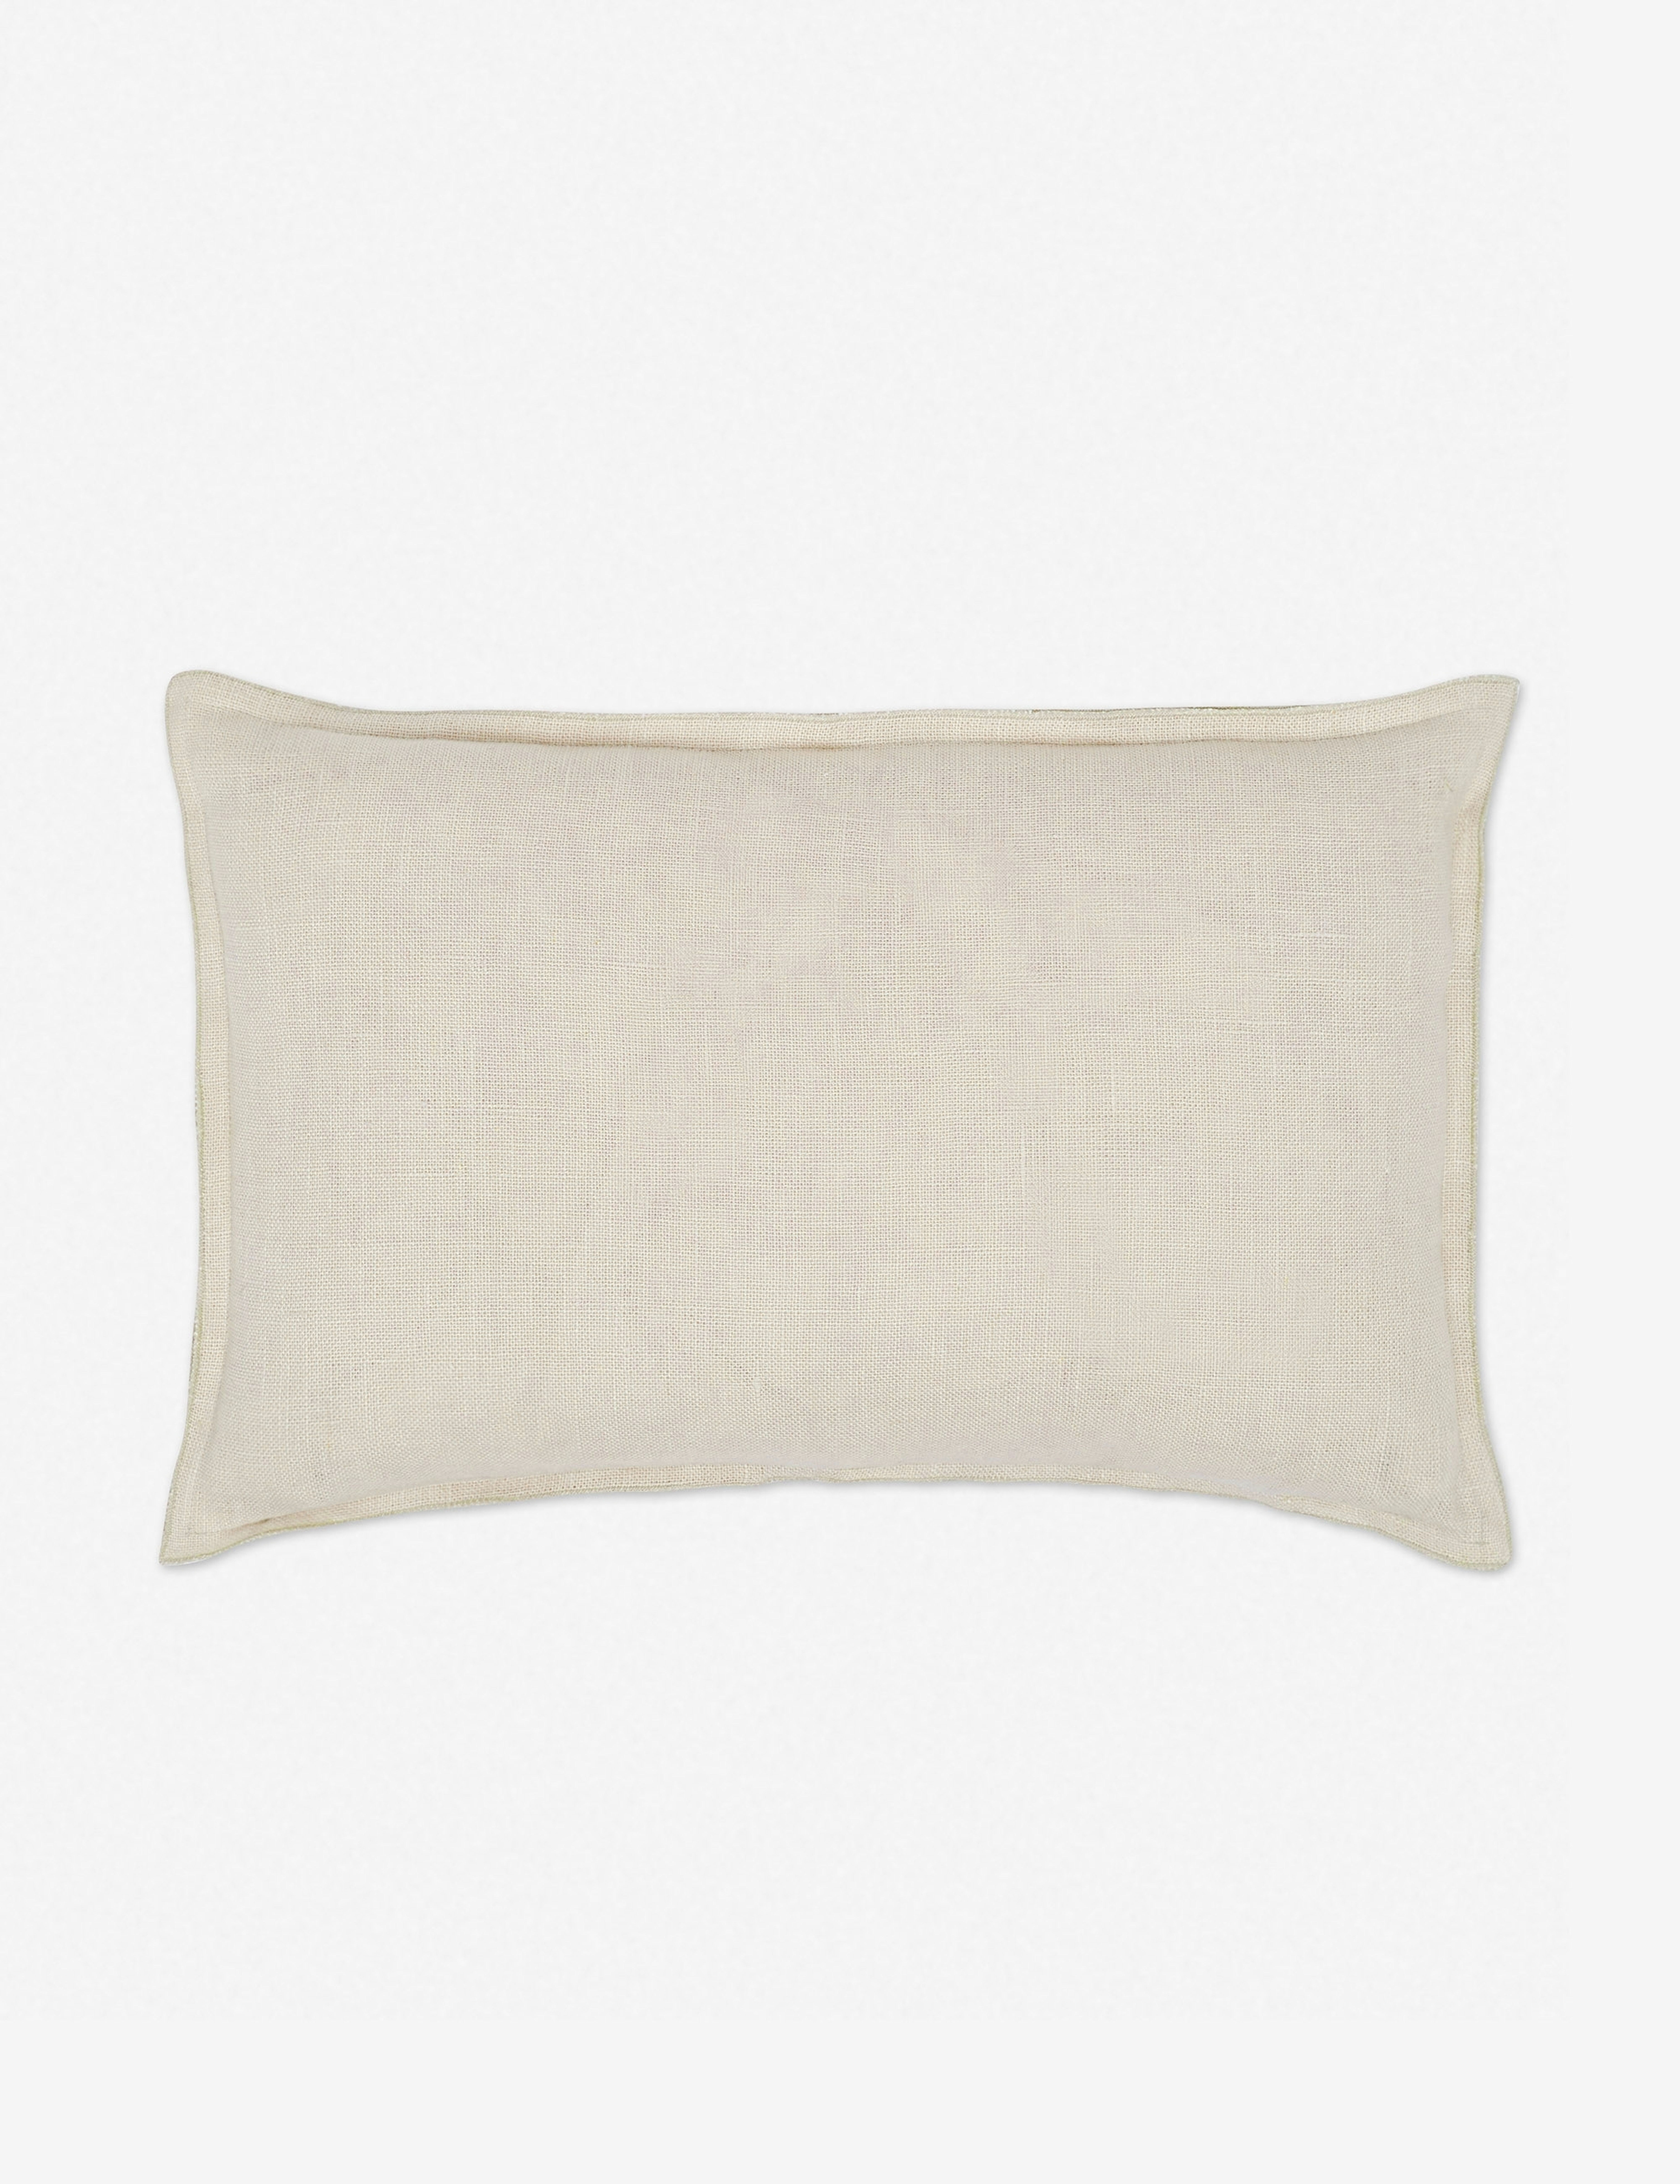 Arlo Linen Lumbar Pillow, Light Natural - Lulu and Georgia